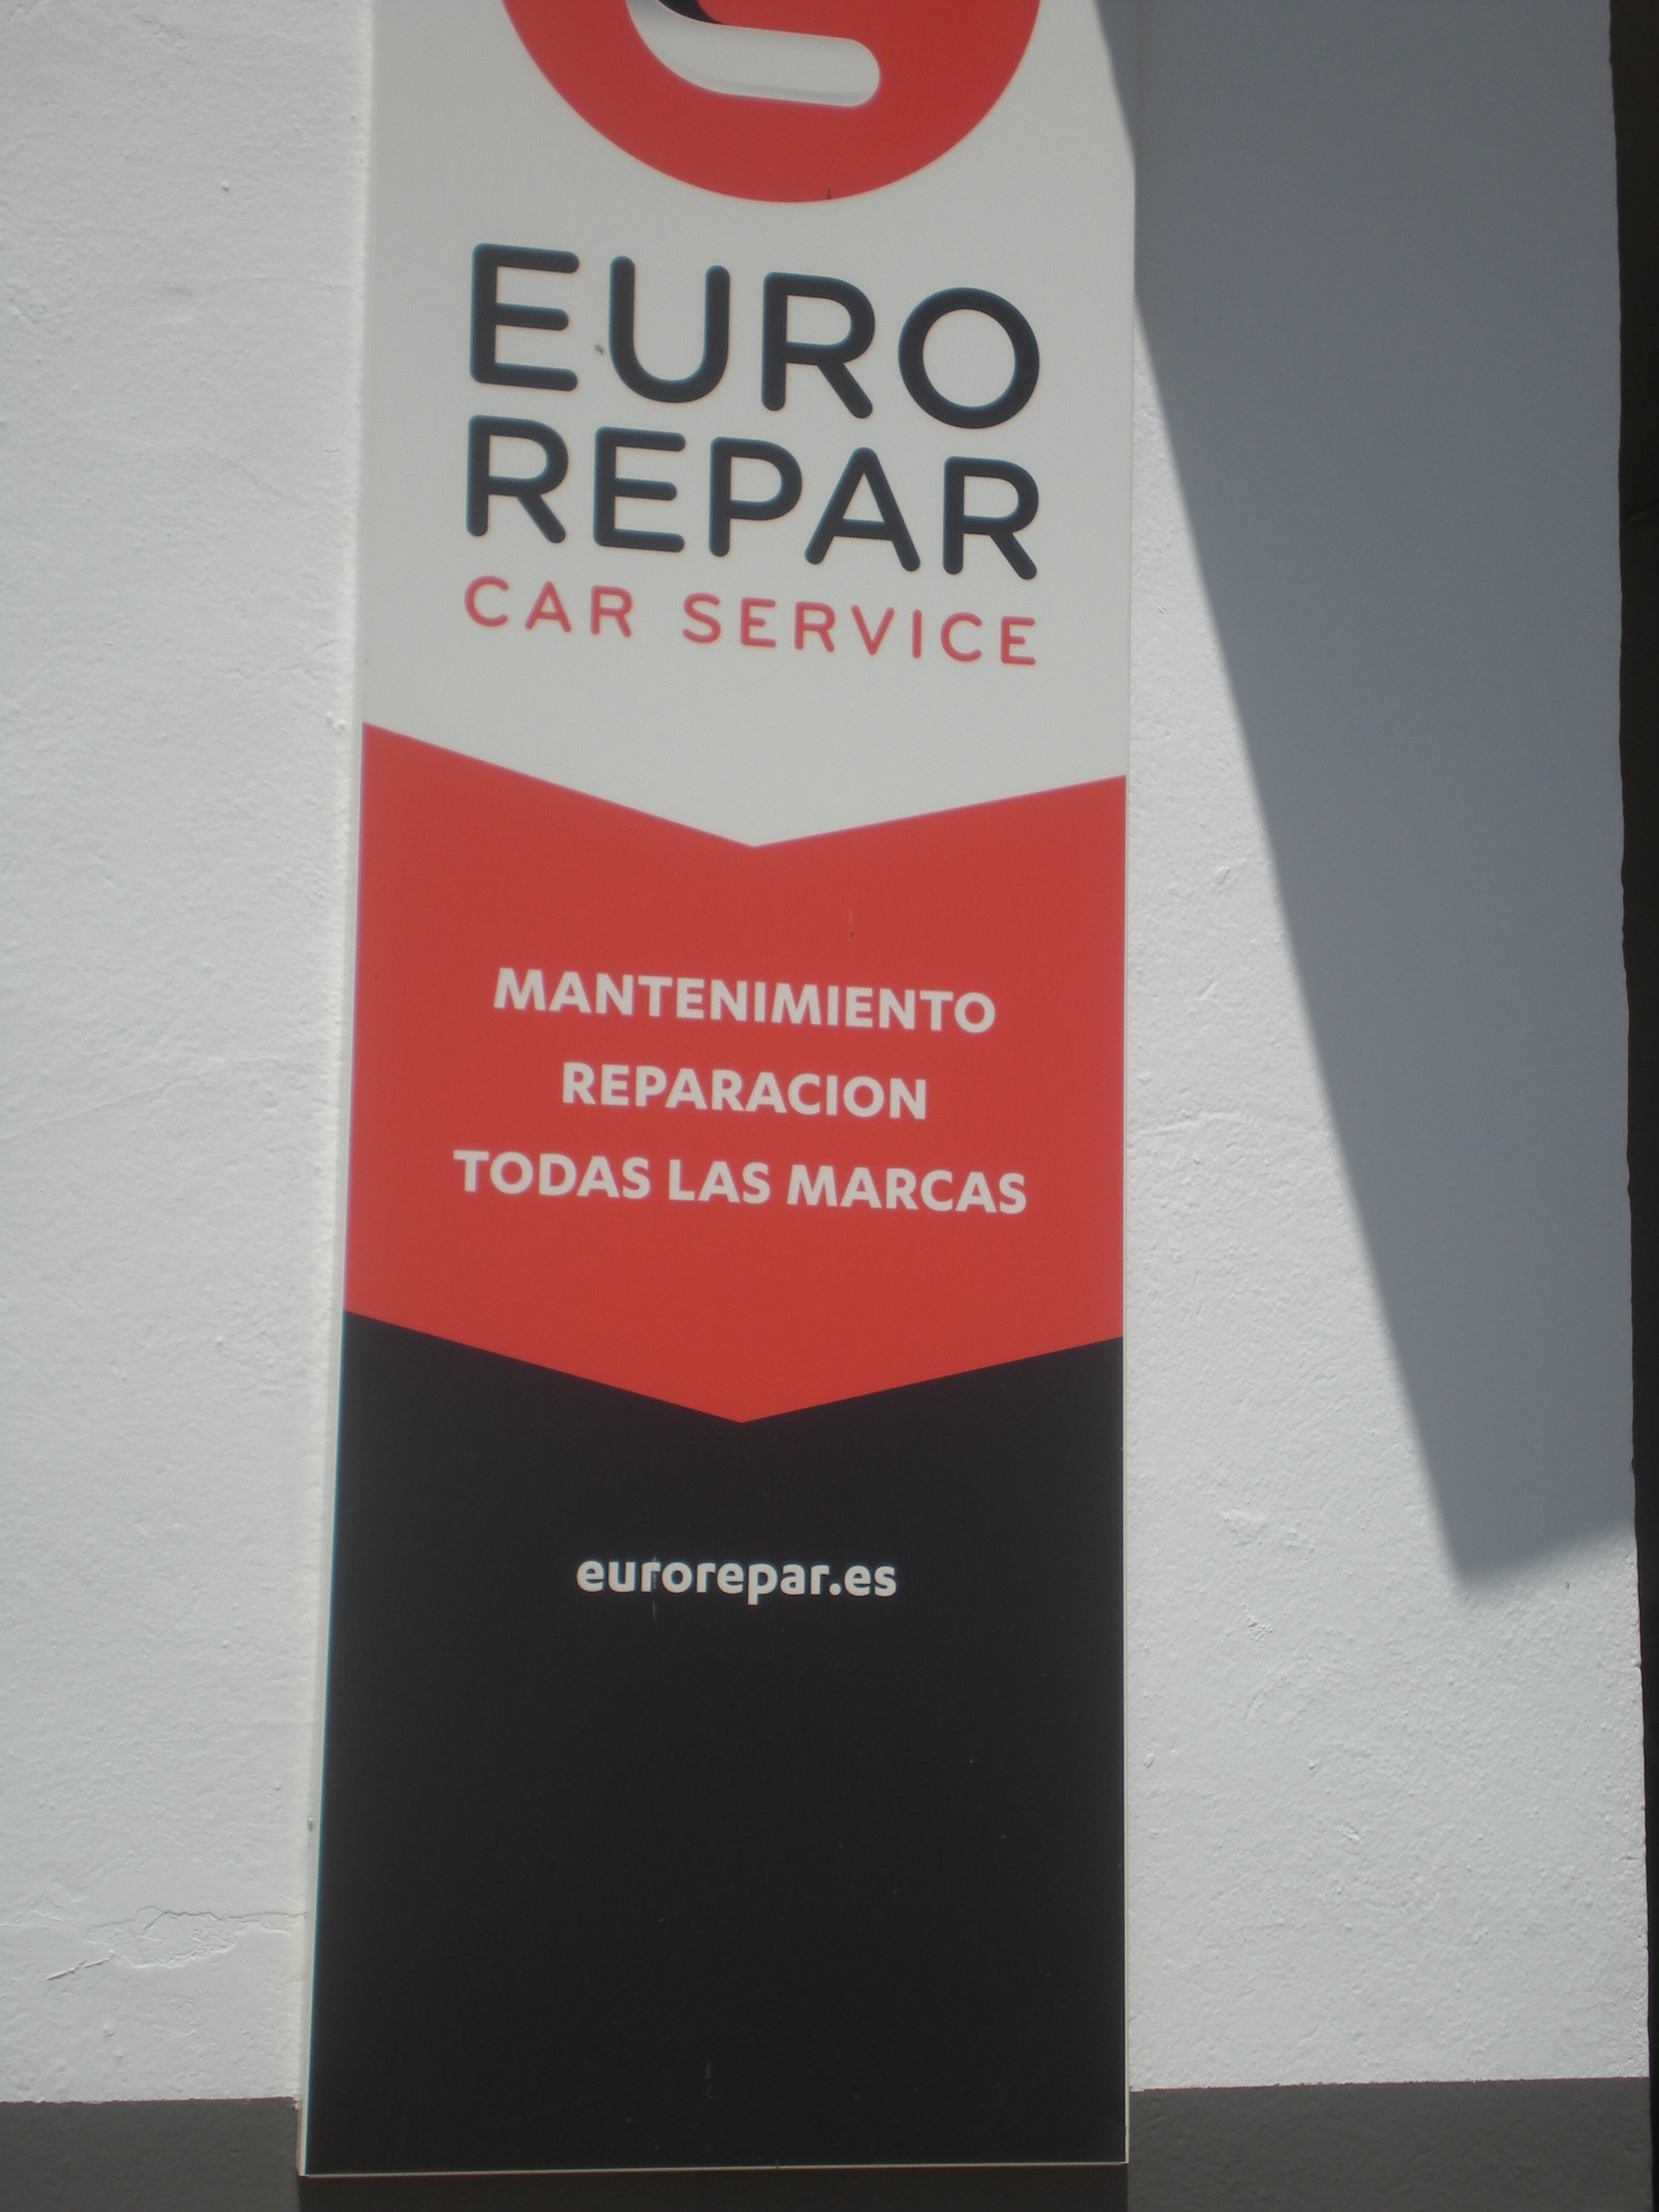 Euro Repar Car Service - Francisco Morilla, S. L.